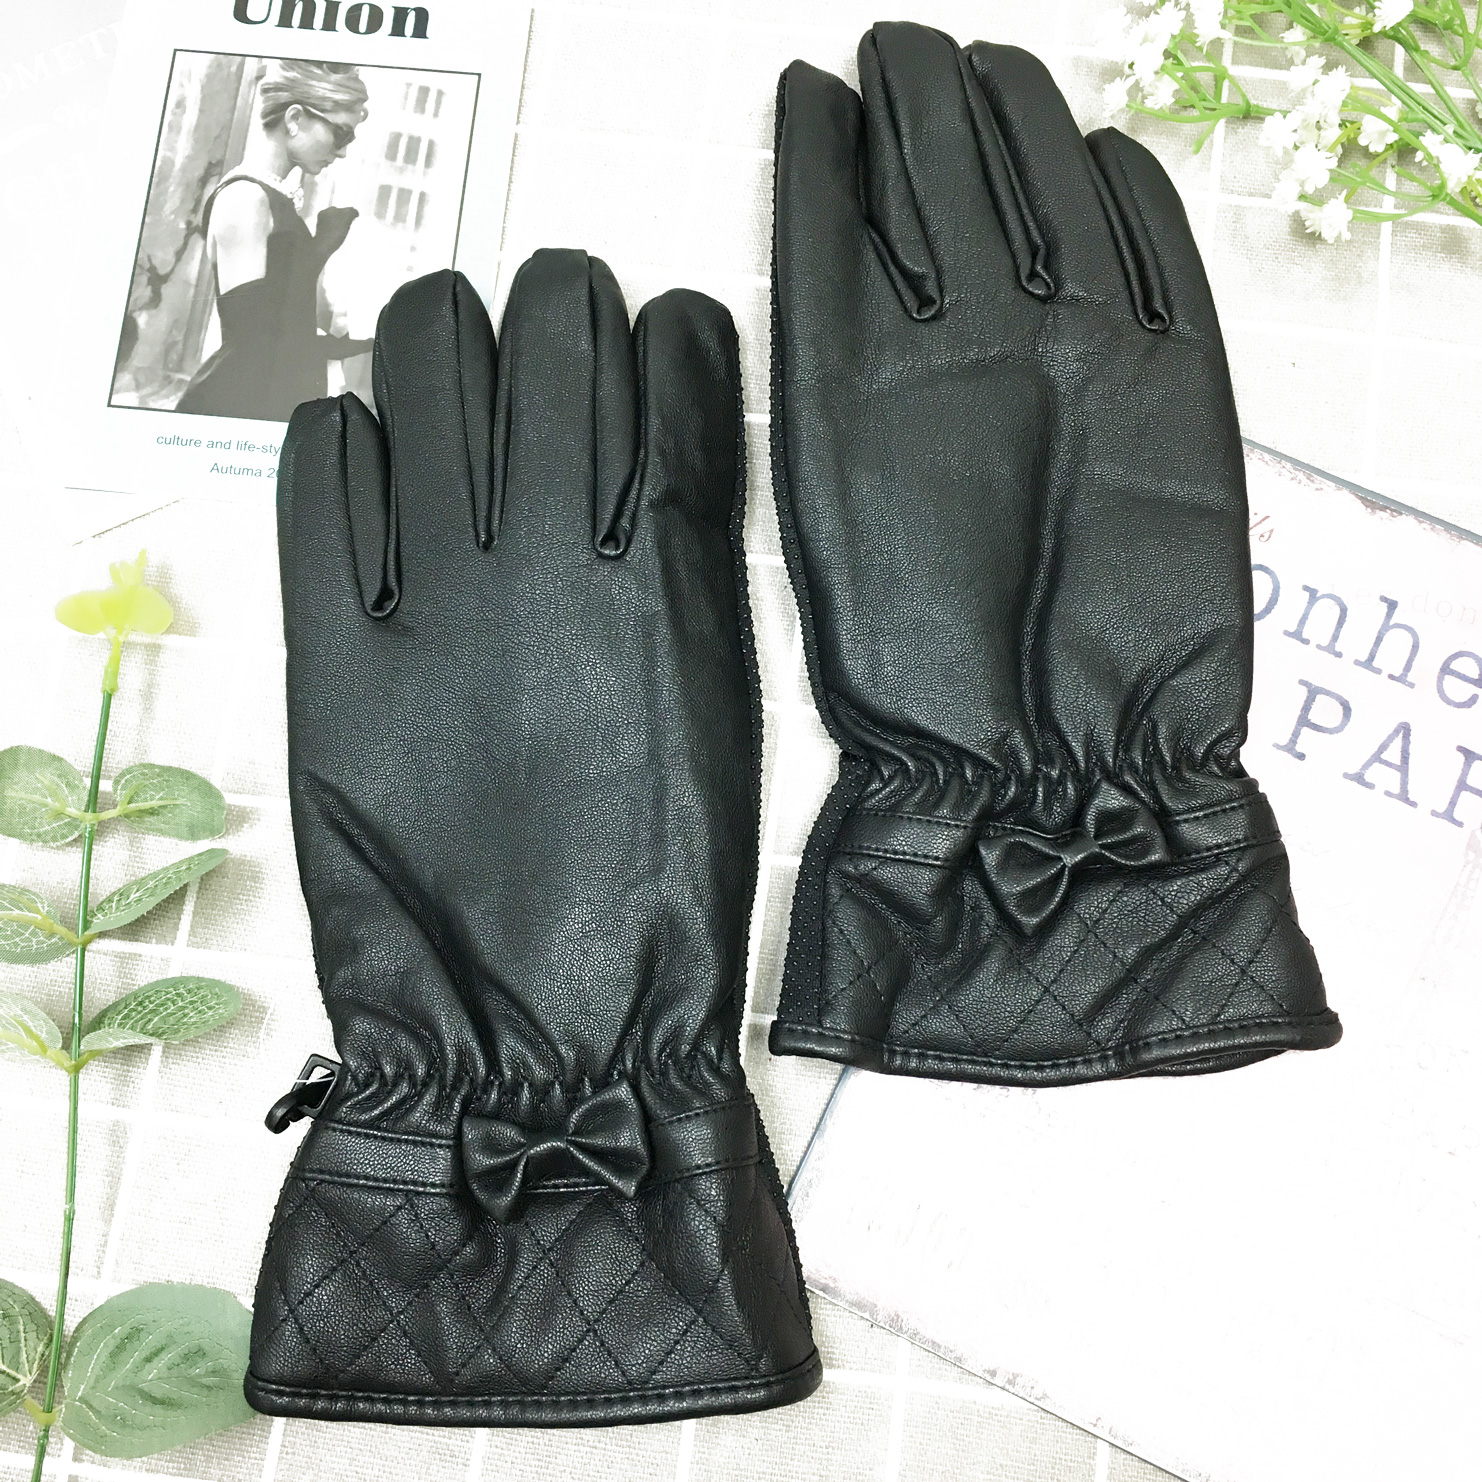 皮手套 防風 防水 素色 格菱紋 蝴蝶結 內刷毛 保暖 止滑 黑色 手套